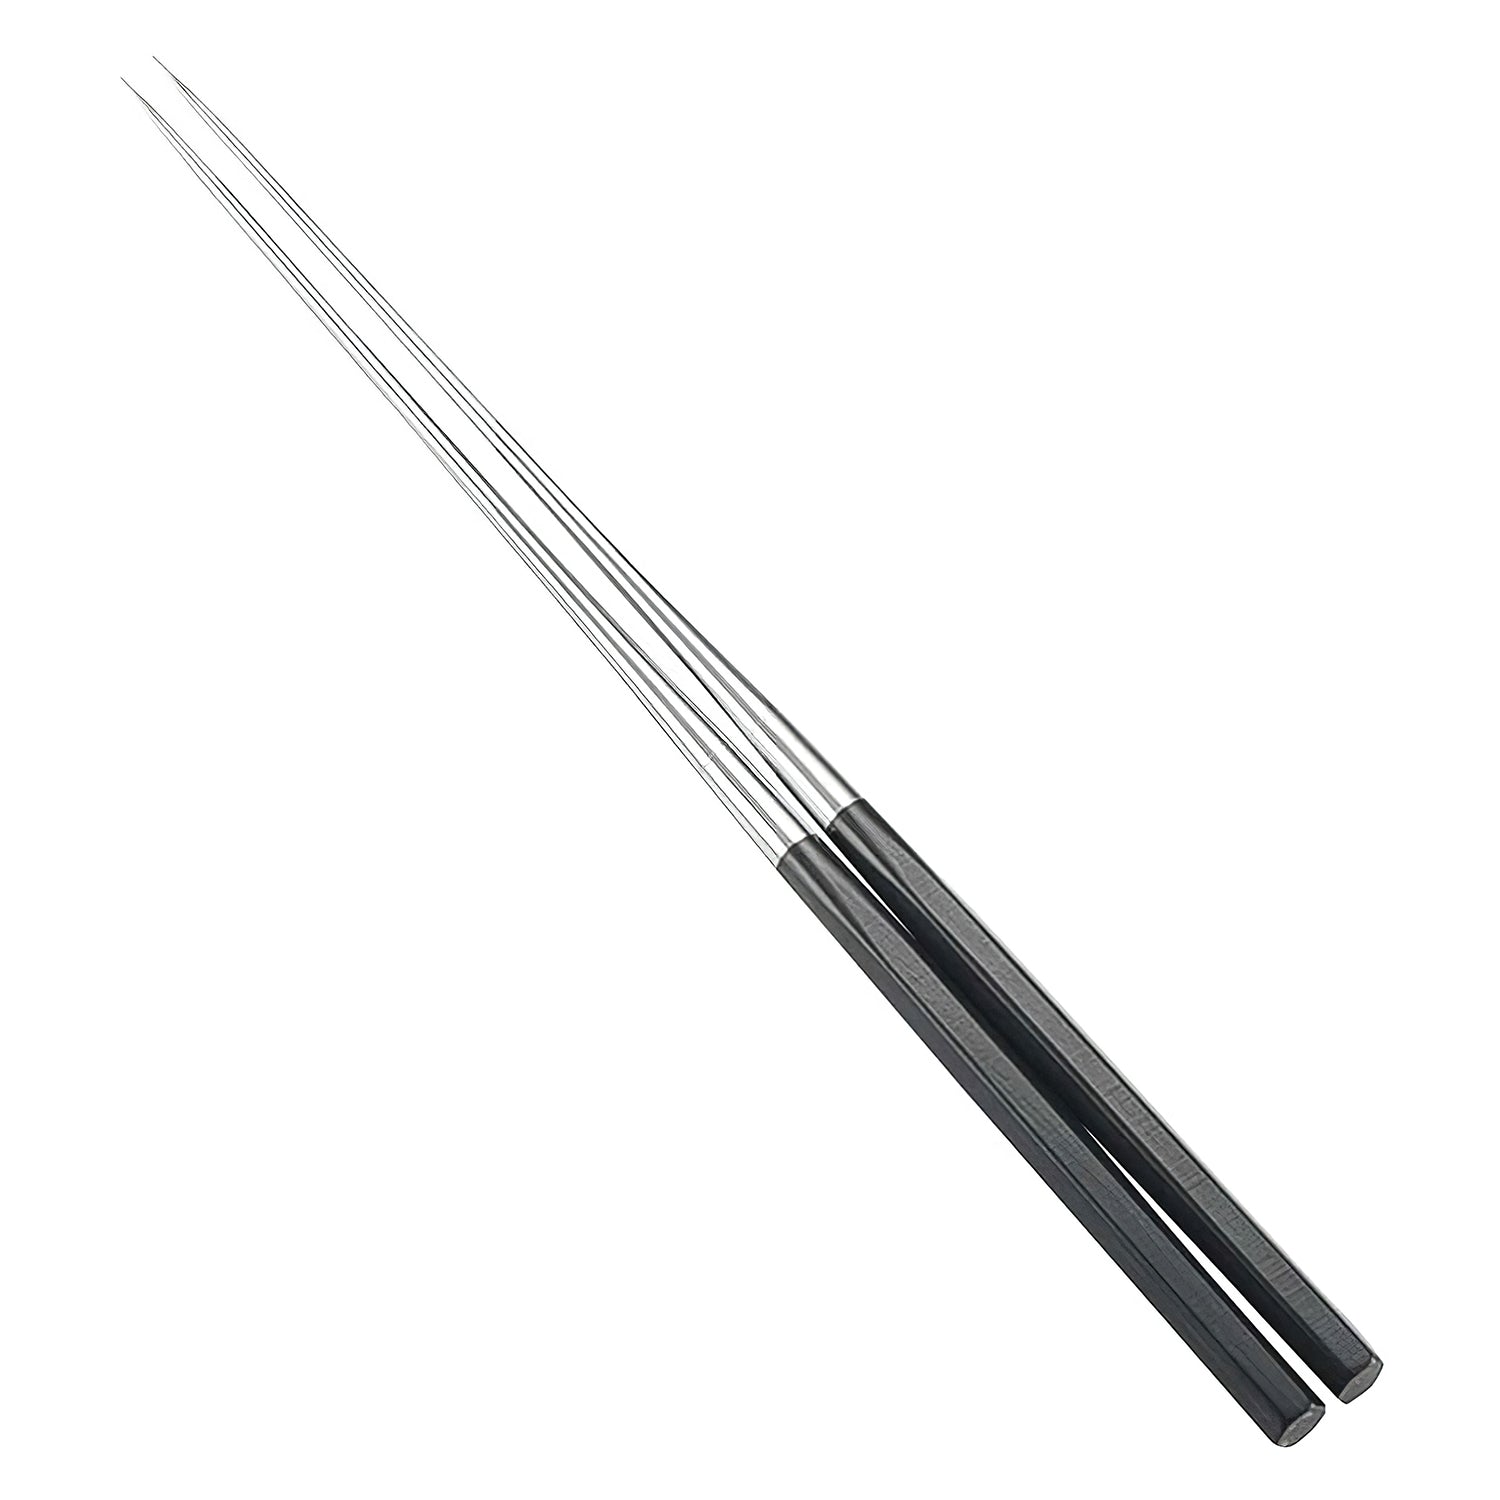 Kanaguchi Stainless Steel Hexagonal Serving Chopsticks 12cm